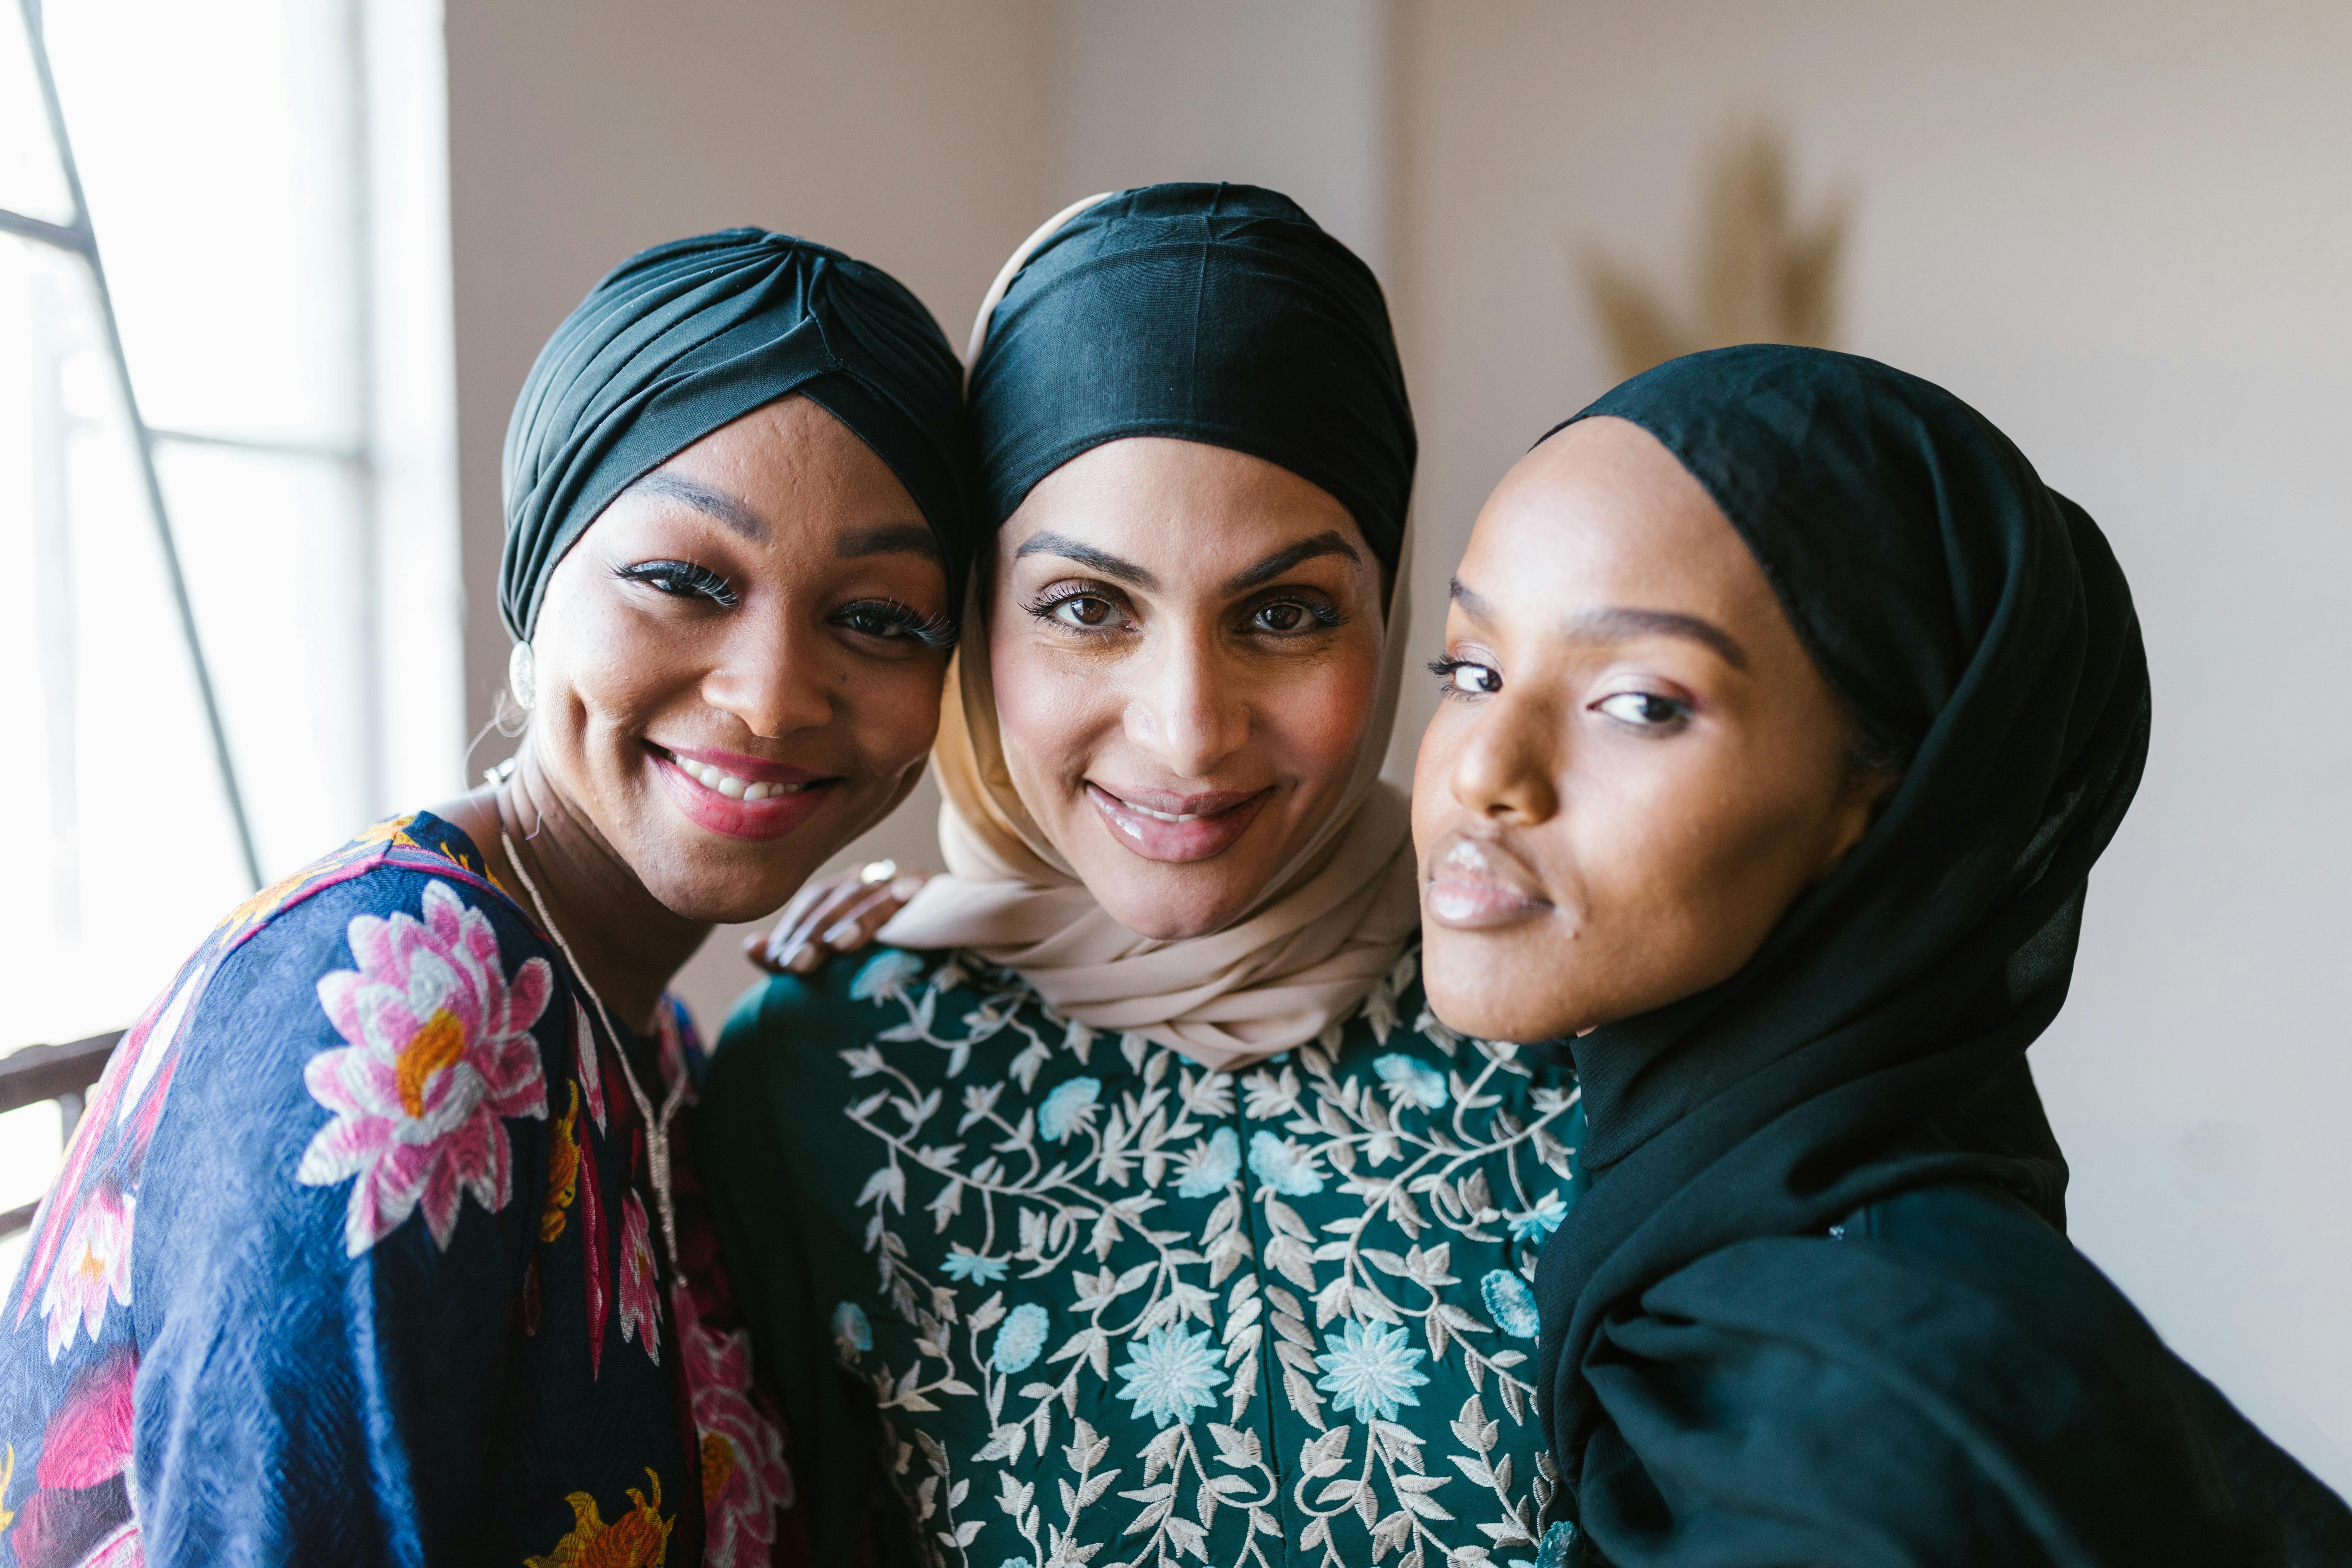 2 women smiling wearing hijab